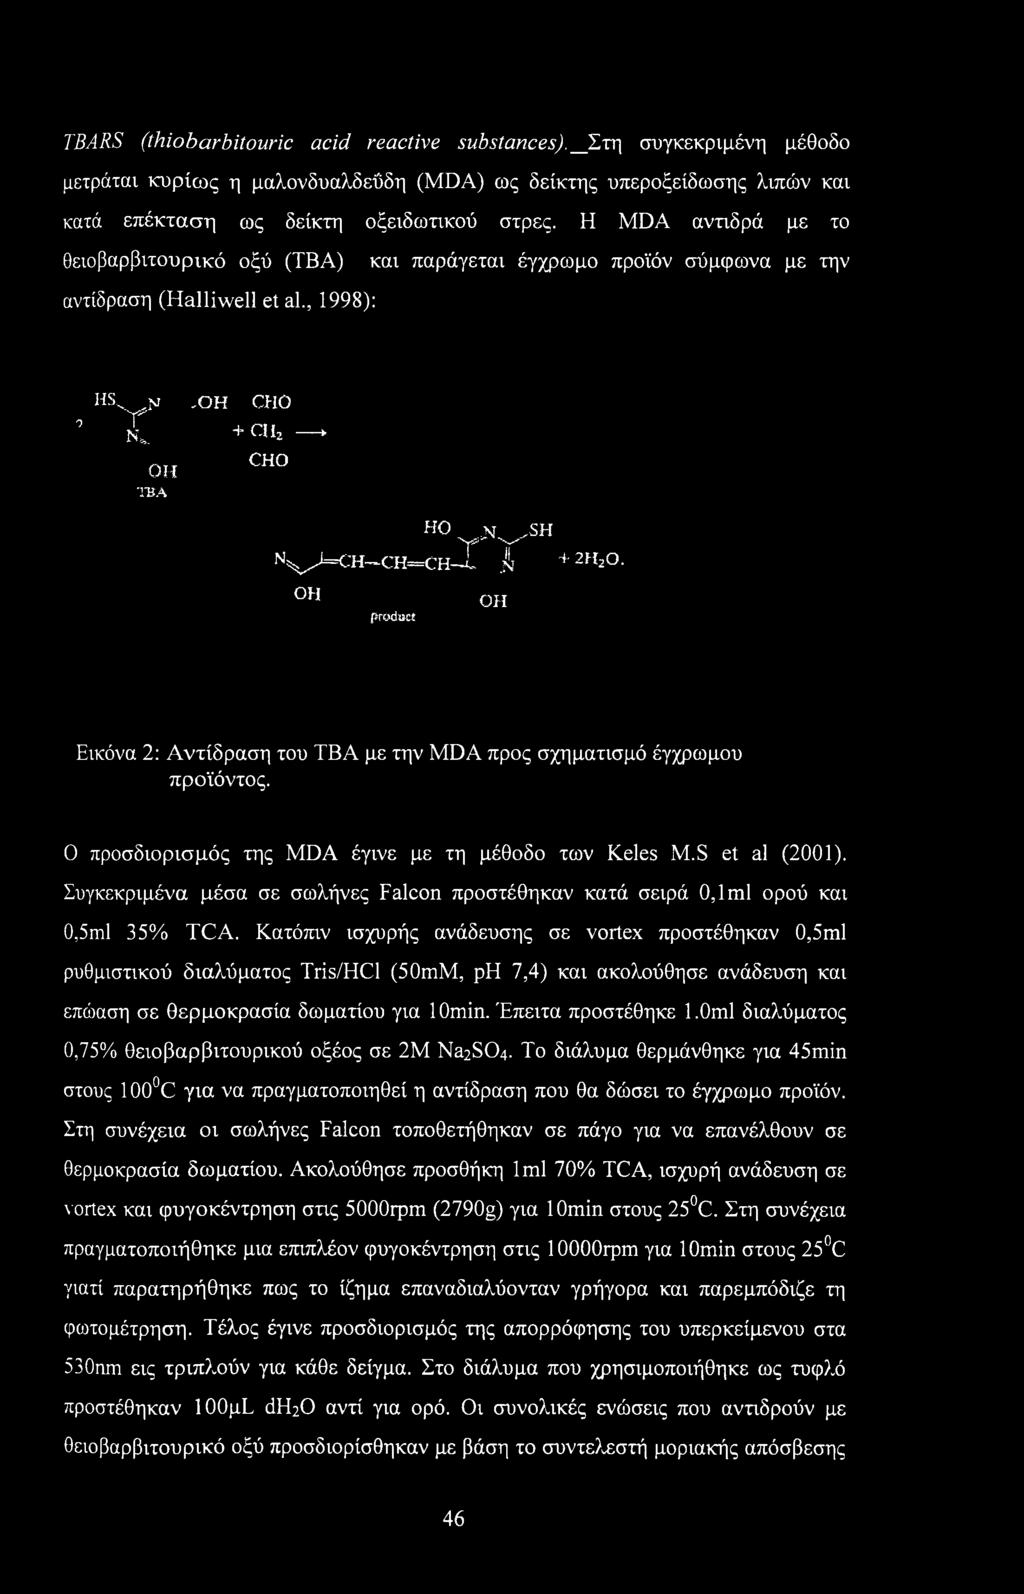 OH ΤΒΑ -OH CHO + ch2 * CHO HO >t^sh Hv>=<:h~ch==ch-X If 4-2H20. OH pwdect OH Εικόνα 2: Αντίδραση του ΤΒΑ με την MDA προς σχηματισμό έγχρωμου προϊόντος.